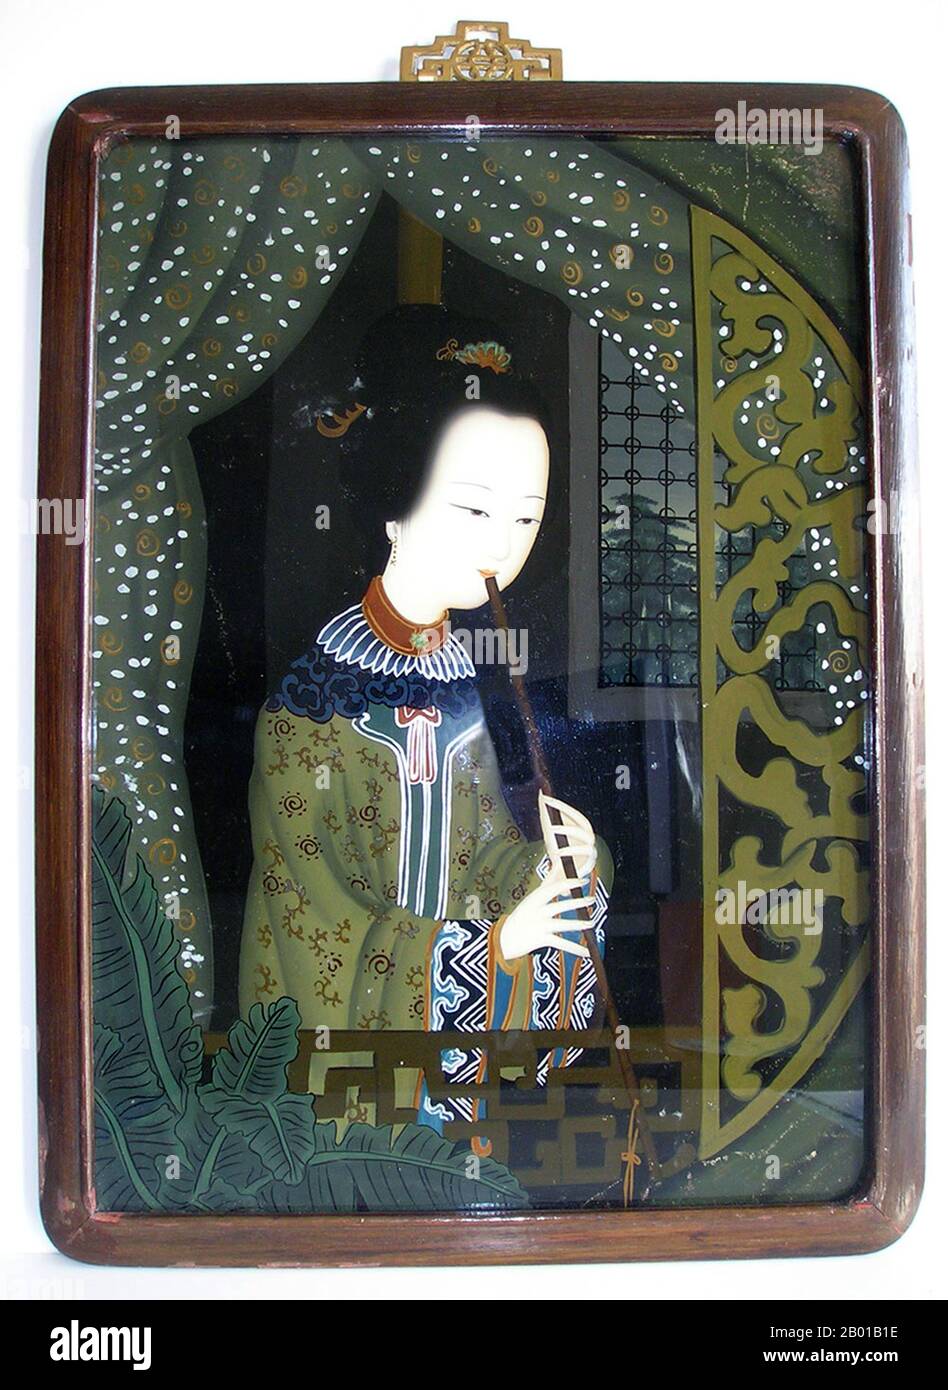 China: Spiegelbild einer Frau, die Flöte spielt, späte Qing-Dynastie, c. 1840-1860. Die umgekehrte Malerei auf Glas ist eine Kunstform, die aus dem Auftragen von Farbe auf ein Glasstück und dem Betrachten des Bildes besteht, indem das Glas umgedreht und durch das Glas auf das Bild geschaut wird. Stockfoto